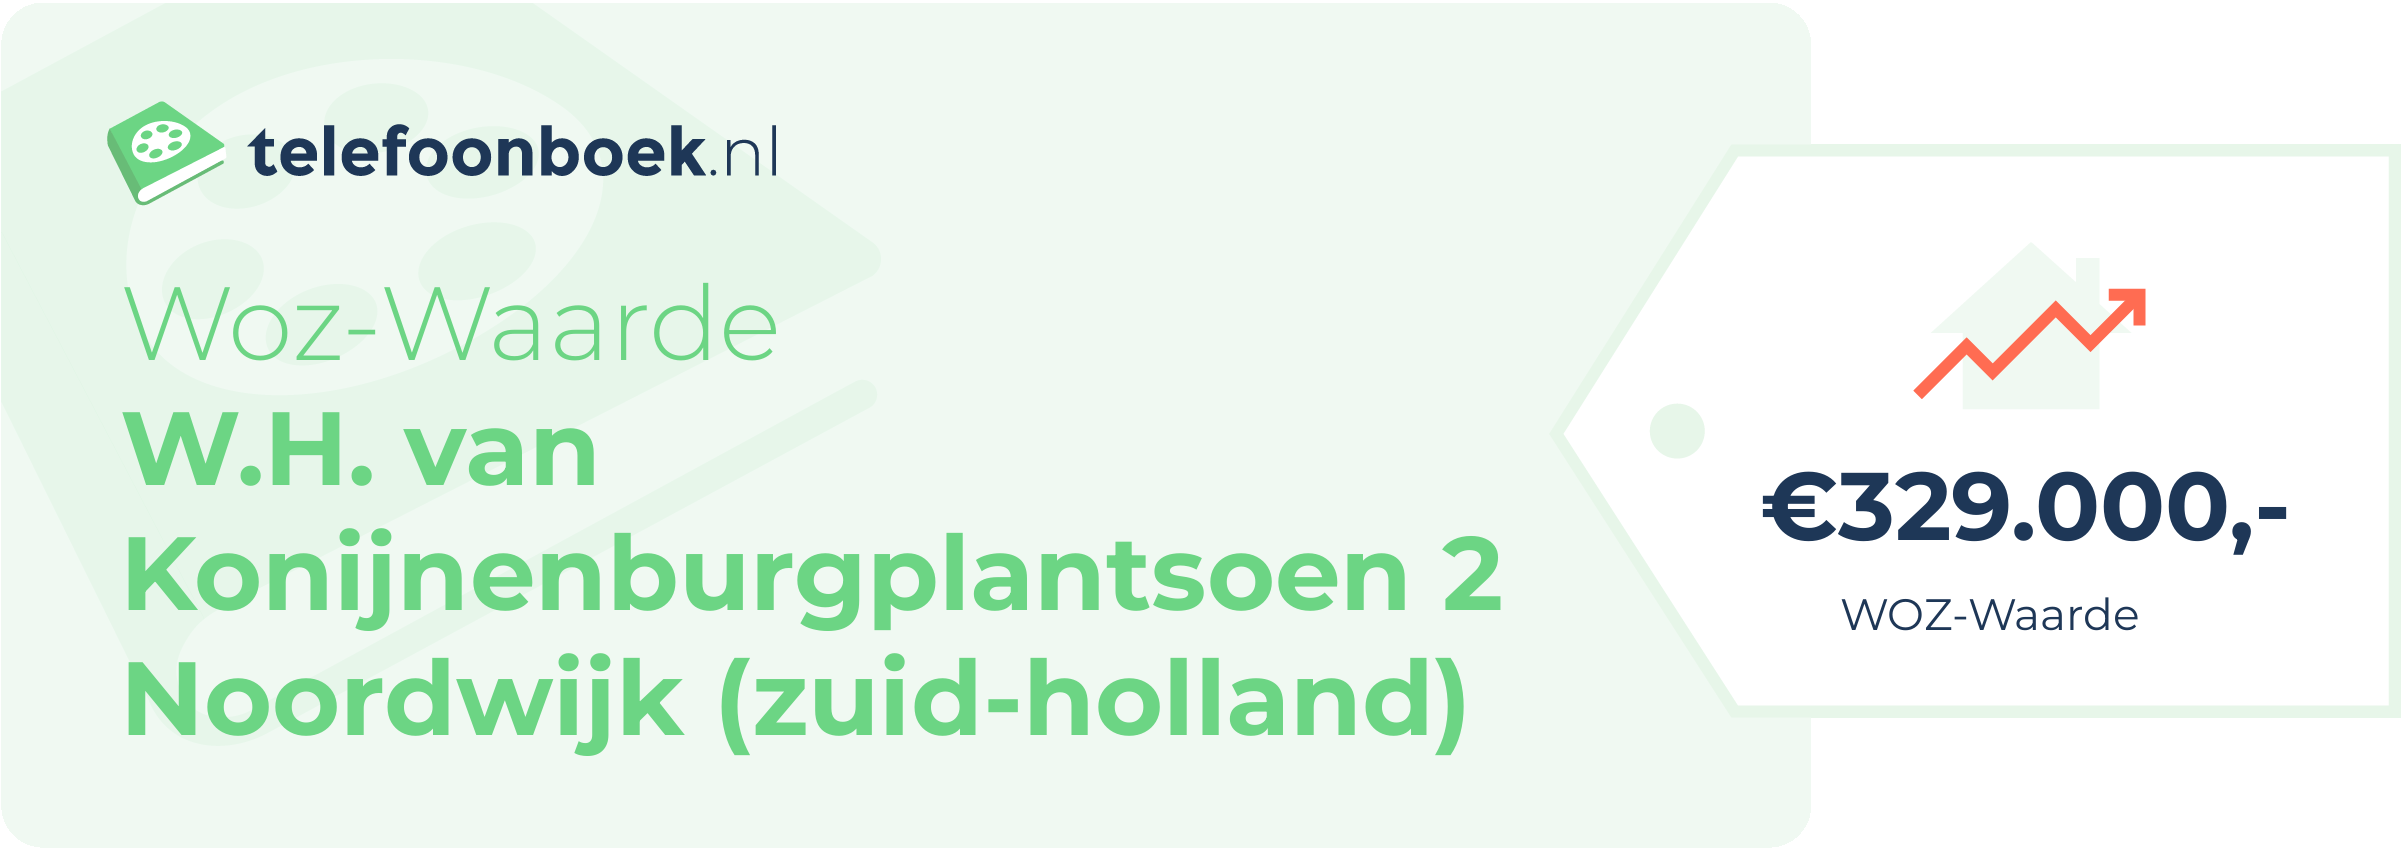 WOZ-waarde W.H. Van Konijnenburgplantsoen 2 Noordwijk (Zuid-Holland)